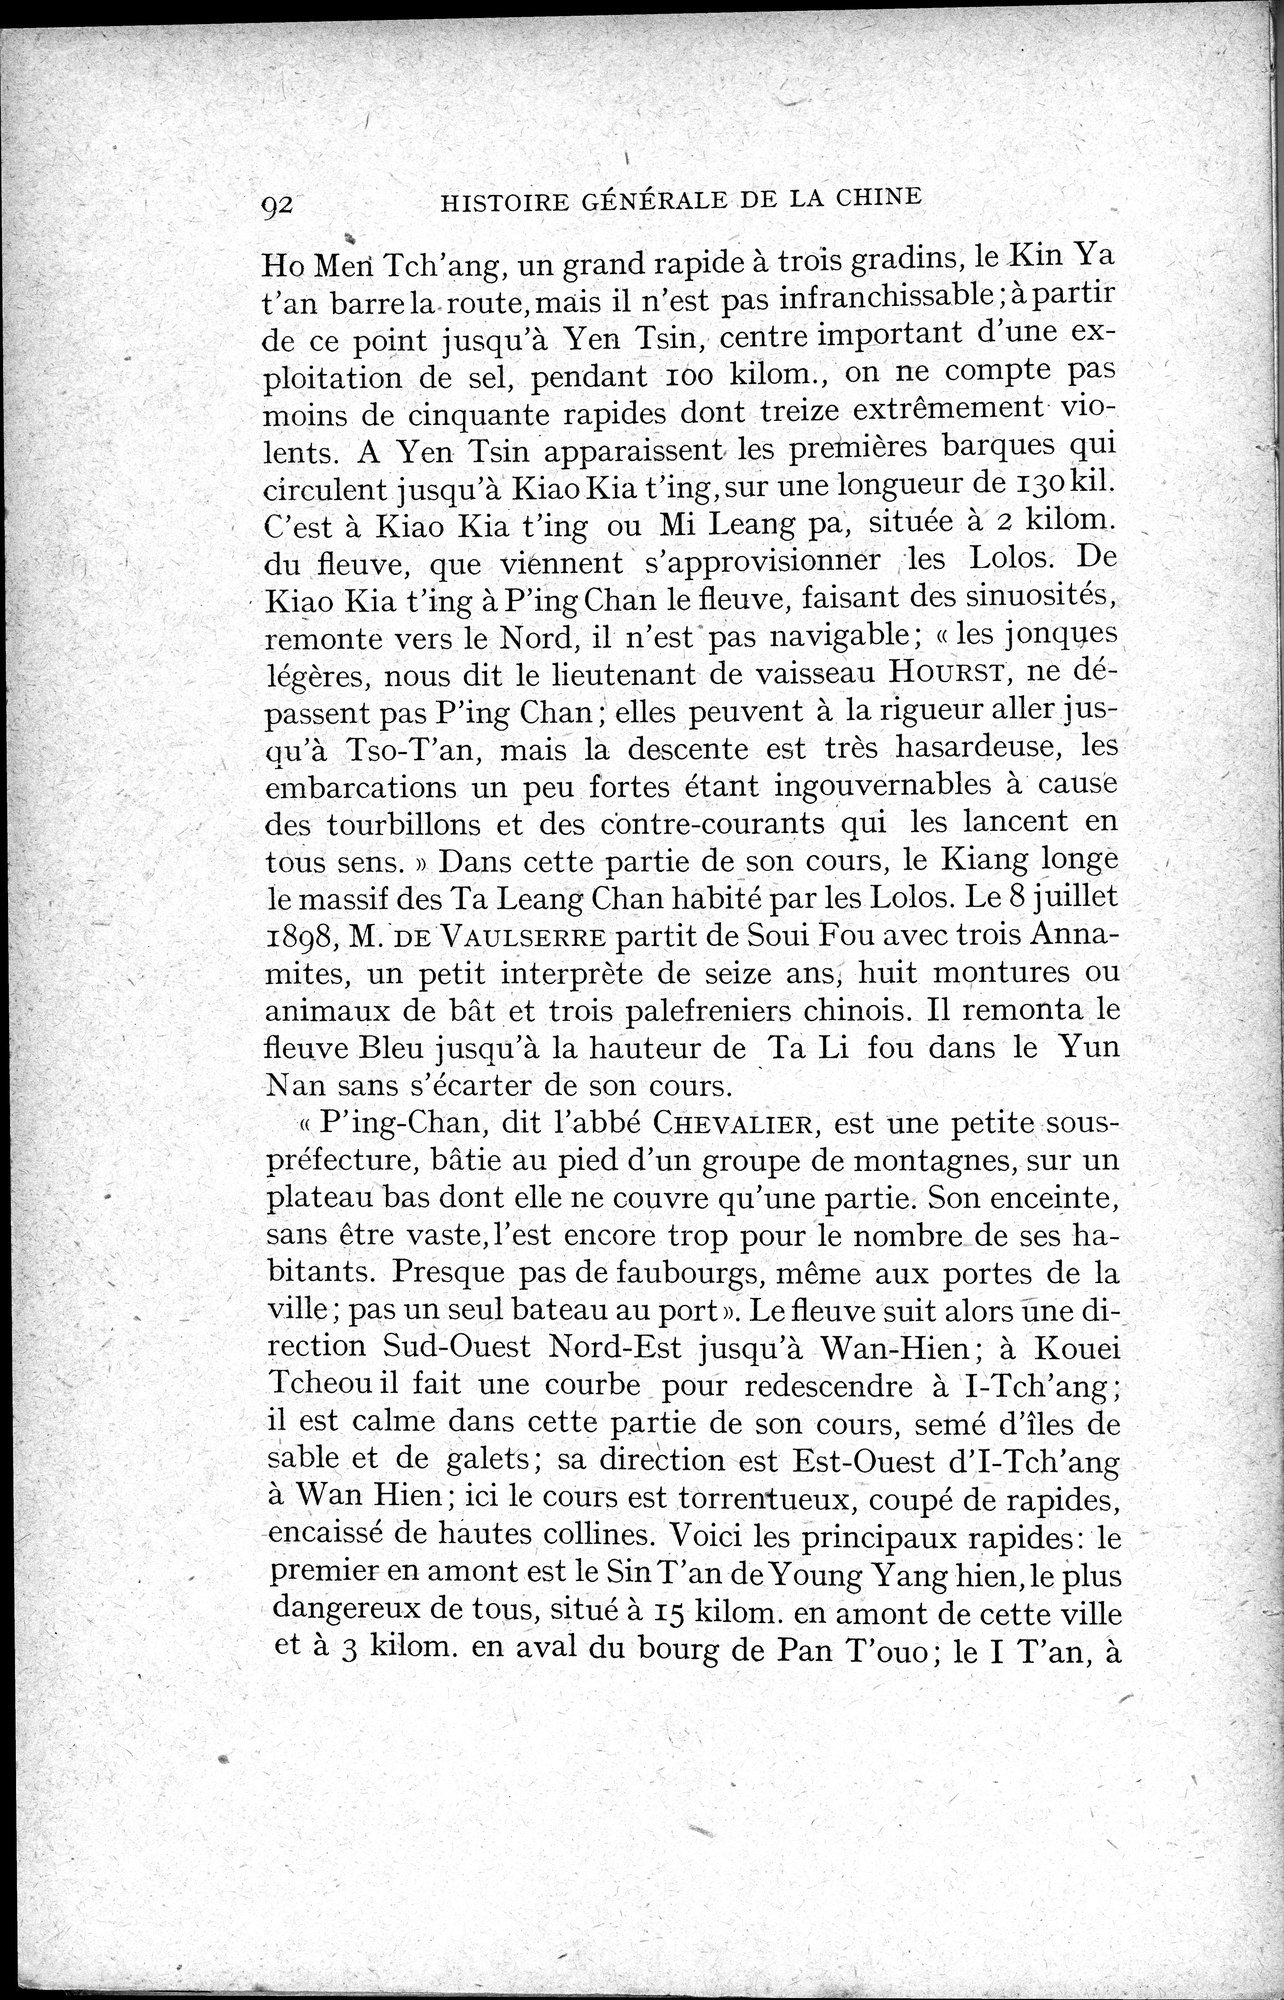 Histoire Générale de la Chine : vol.1 / Page 94 (Grayscale High Resolution Image)